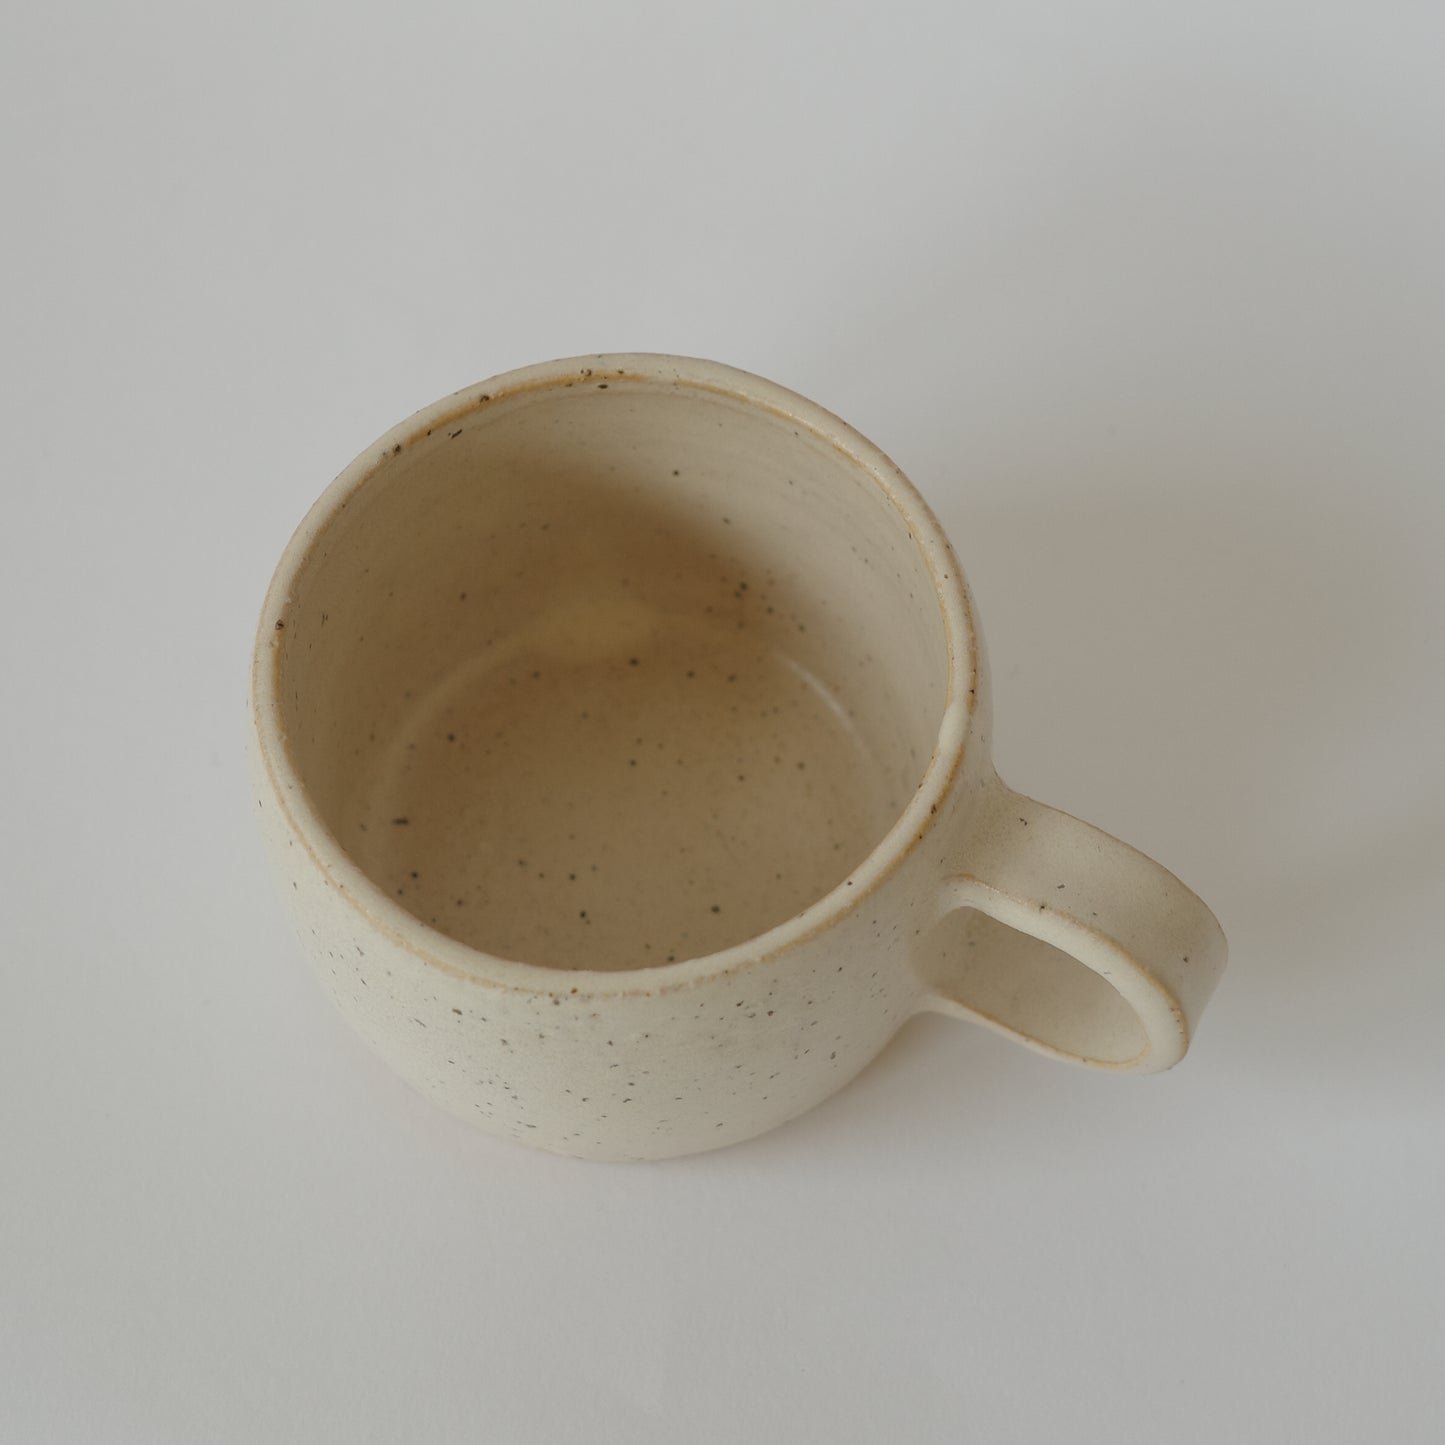 Grain mug